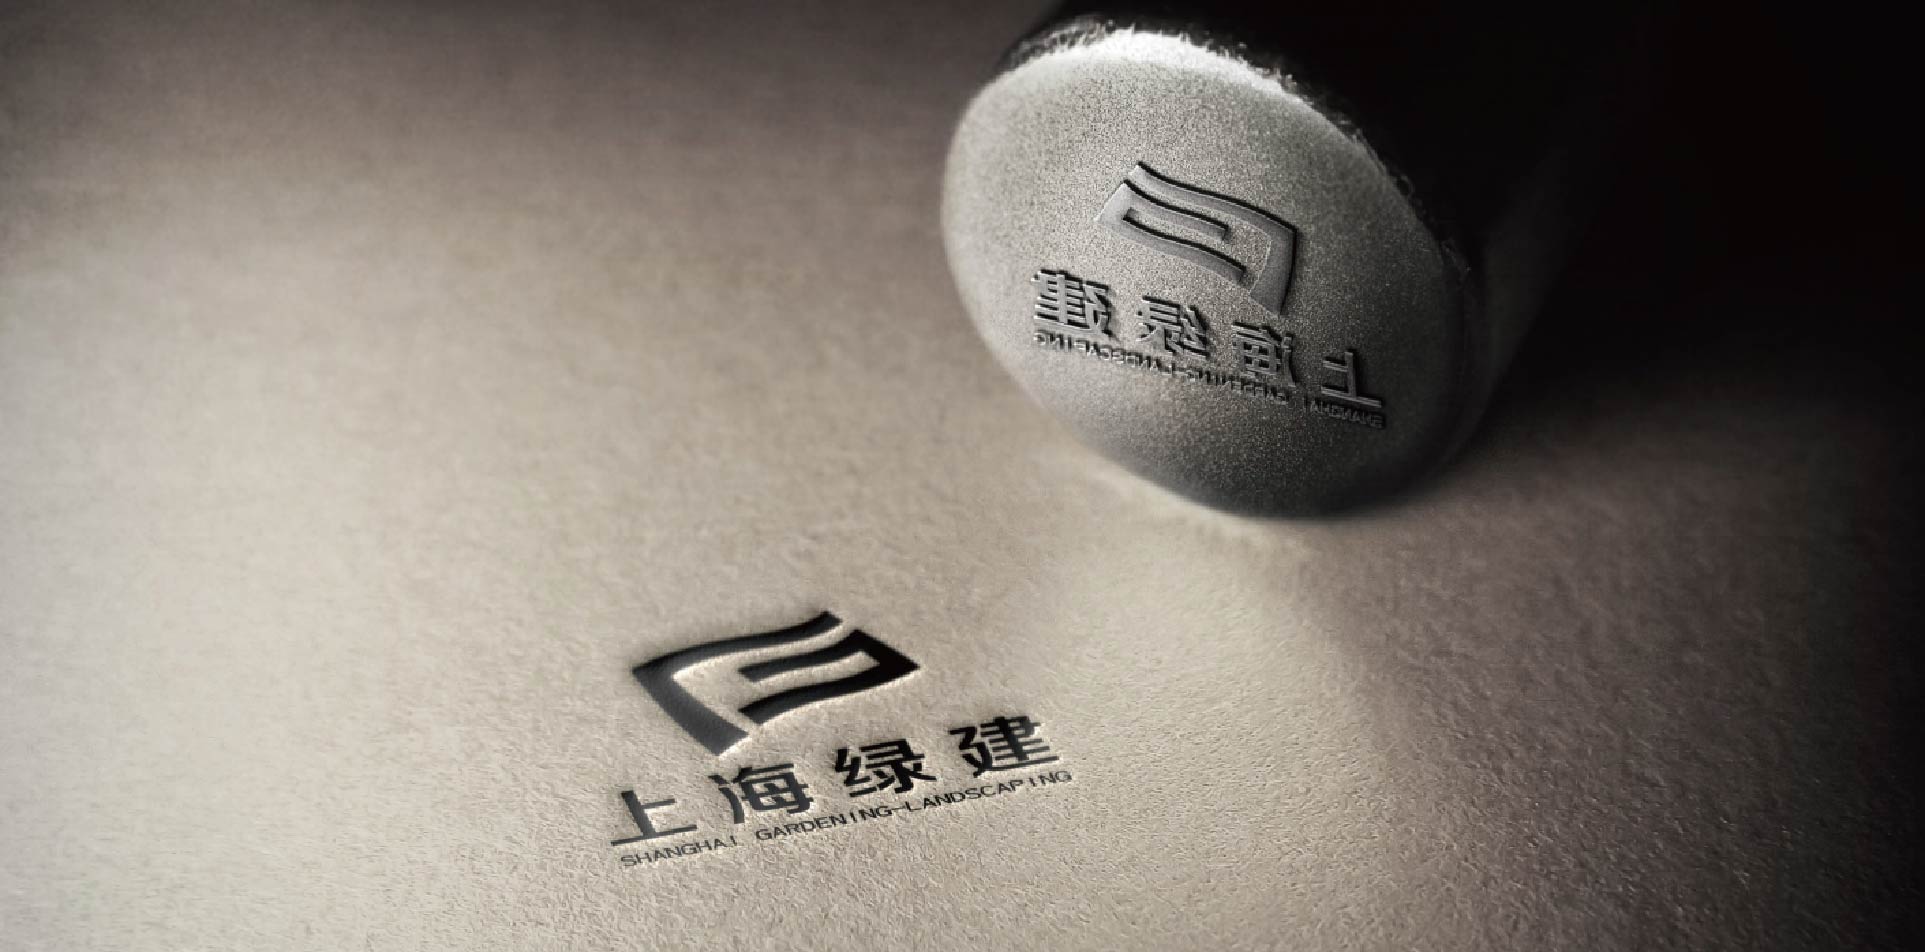 上海vi设计公司